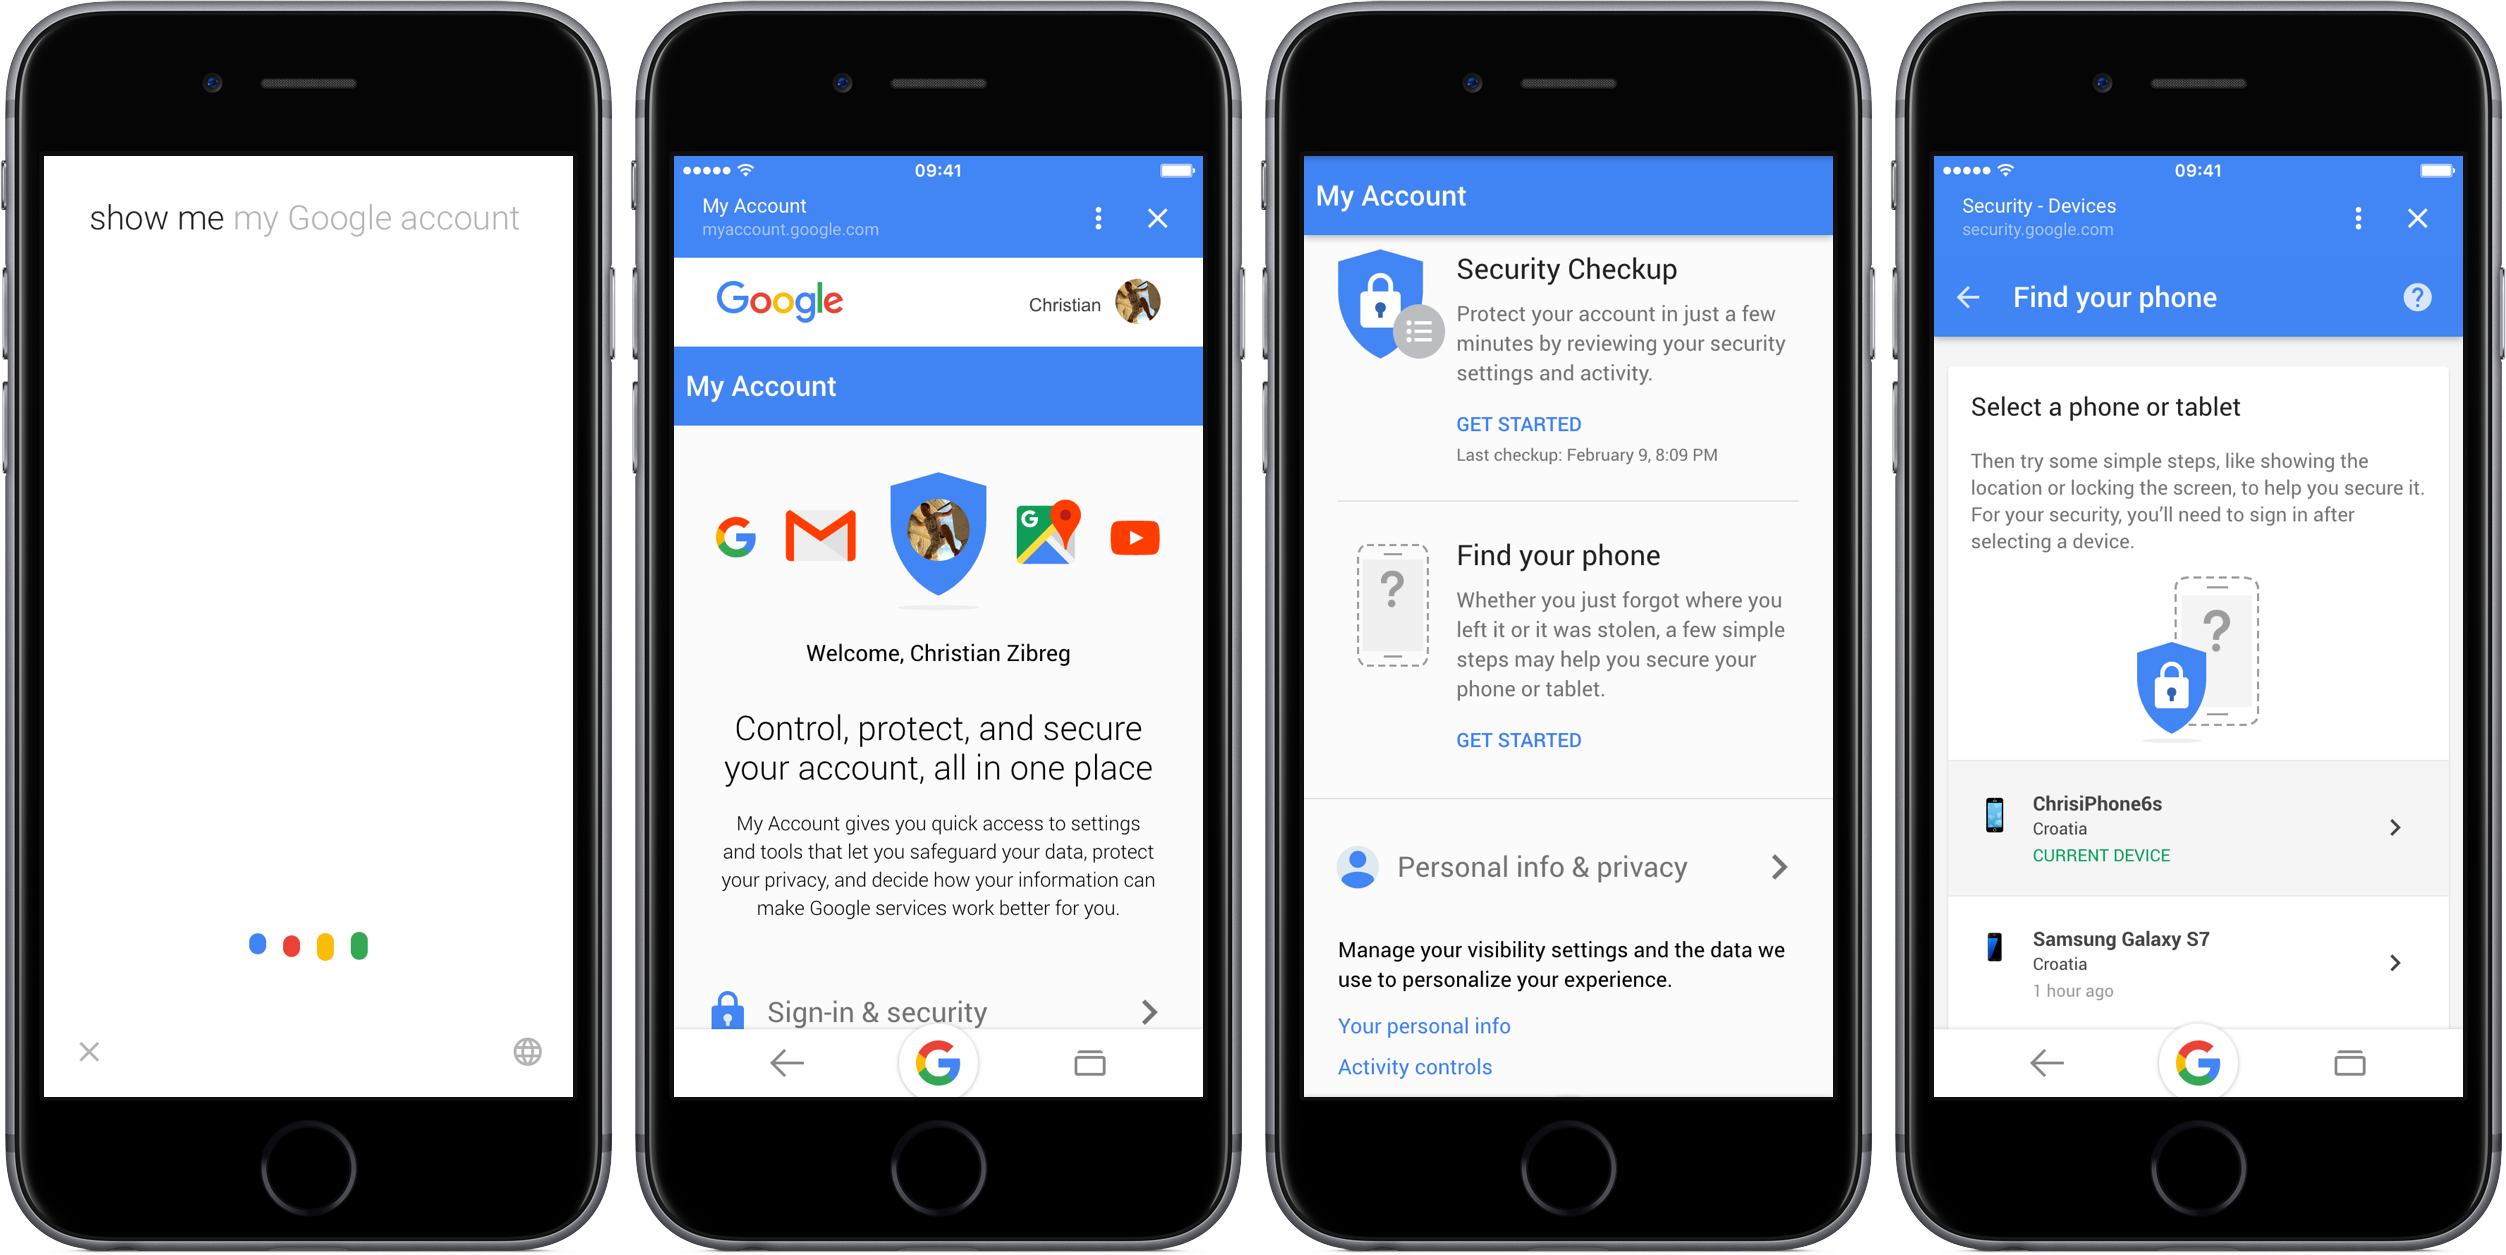 A Google segít megtalálni a készüléked, amolyan “Find my